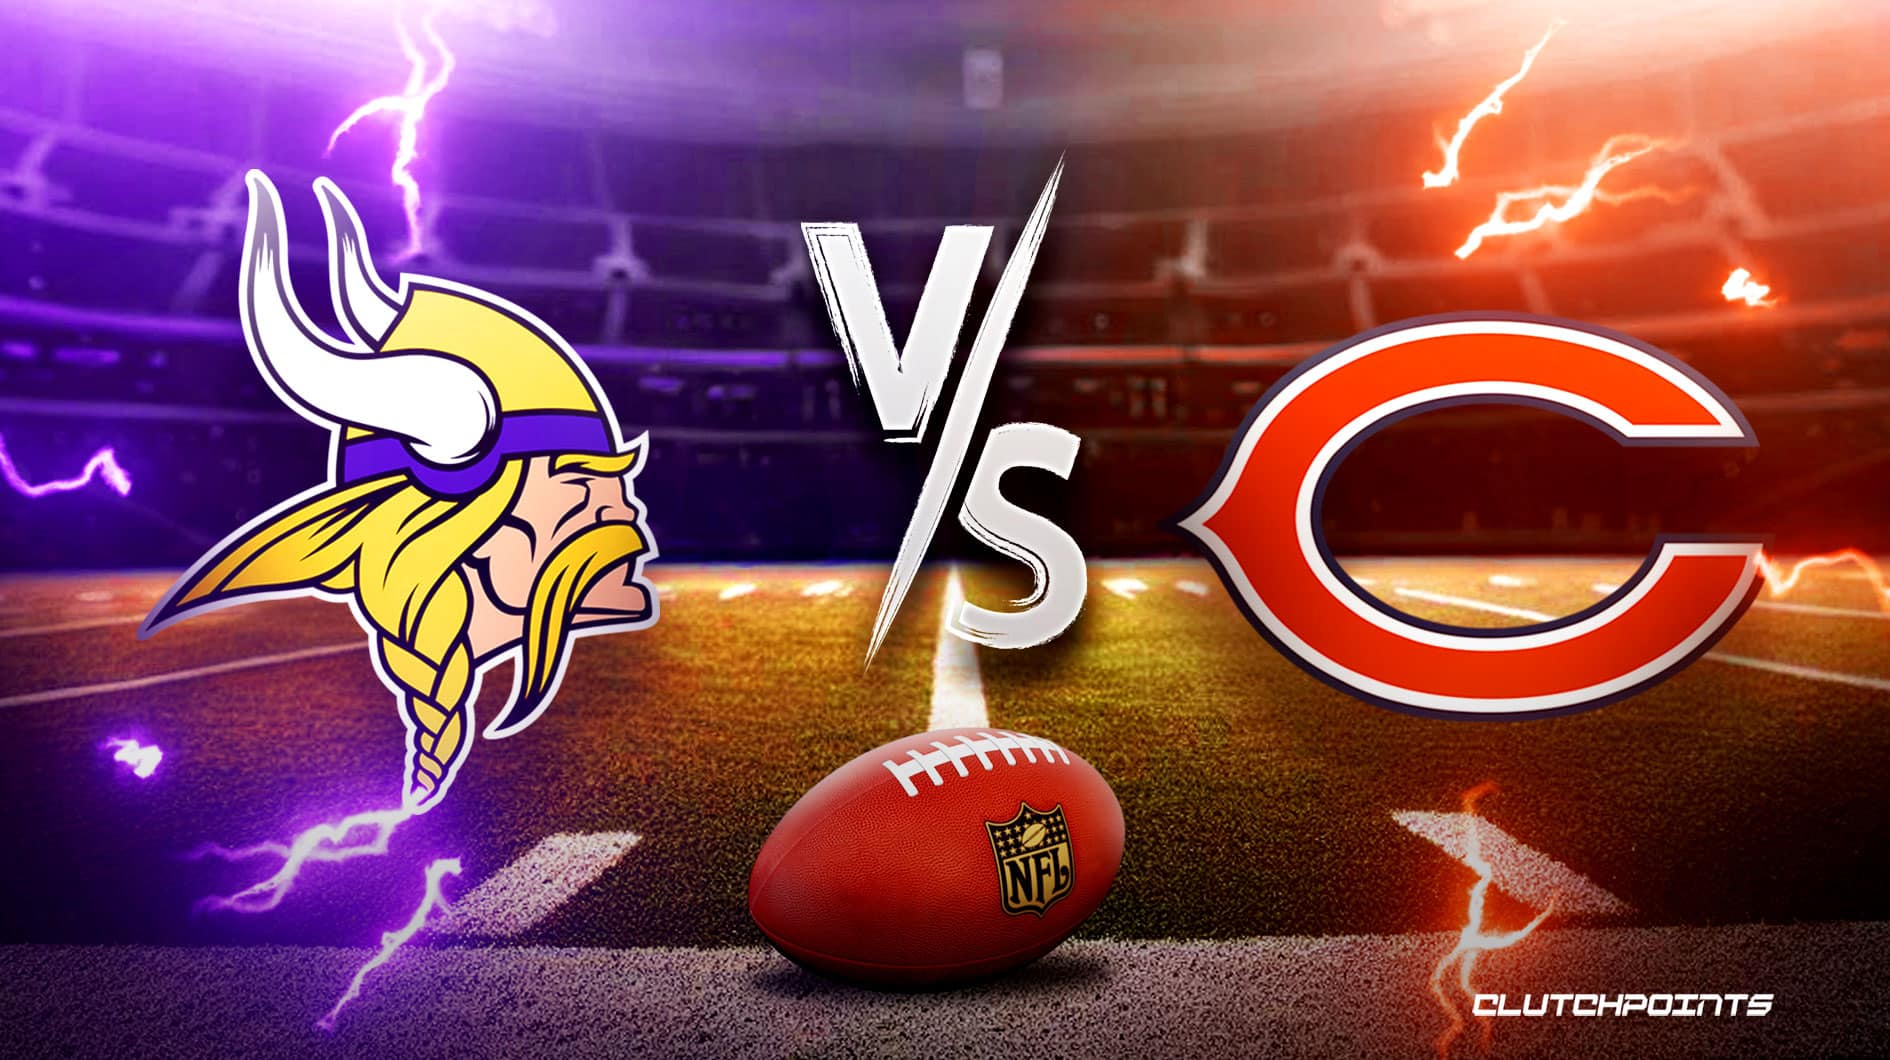 VikingsBears prediction, odds, pick, how to watch NFL Week 6